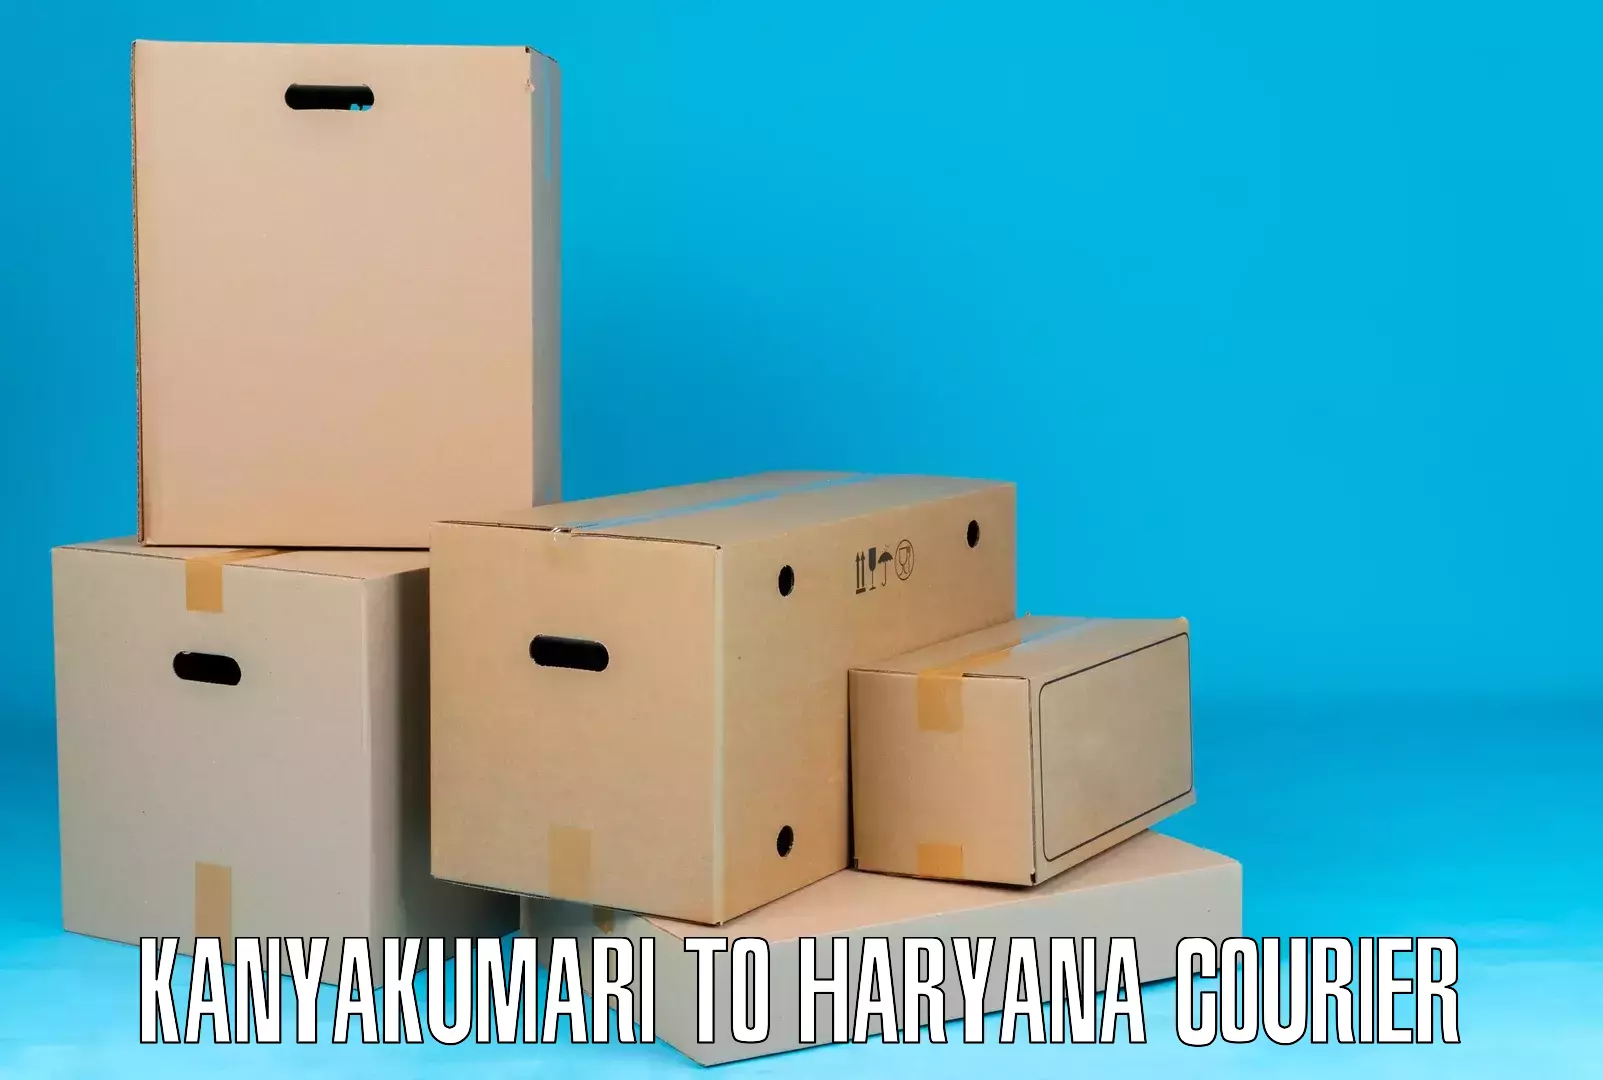 Customized shipping options Kanyakumari to Haryana